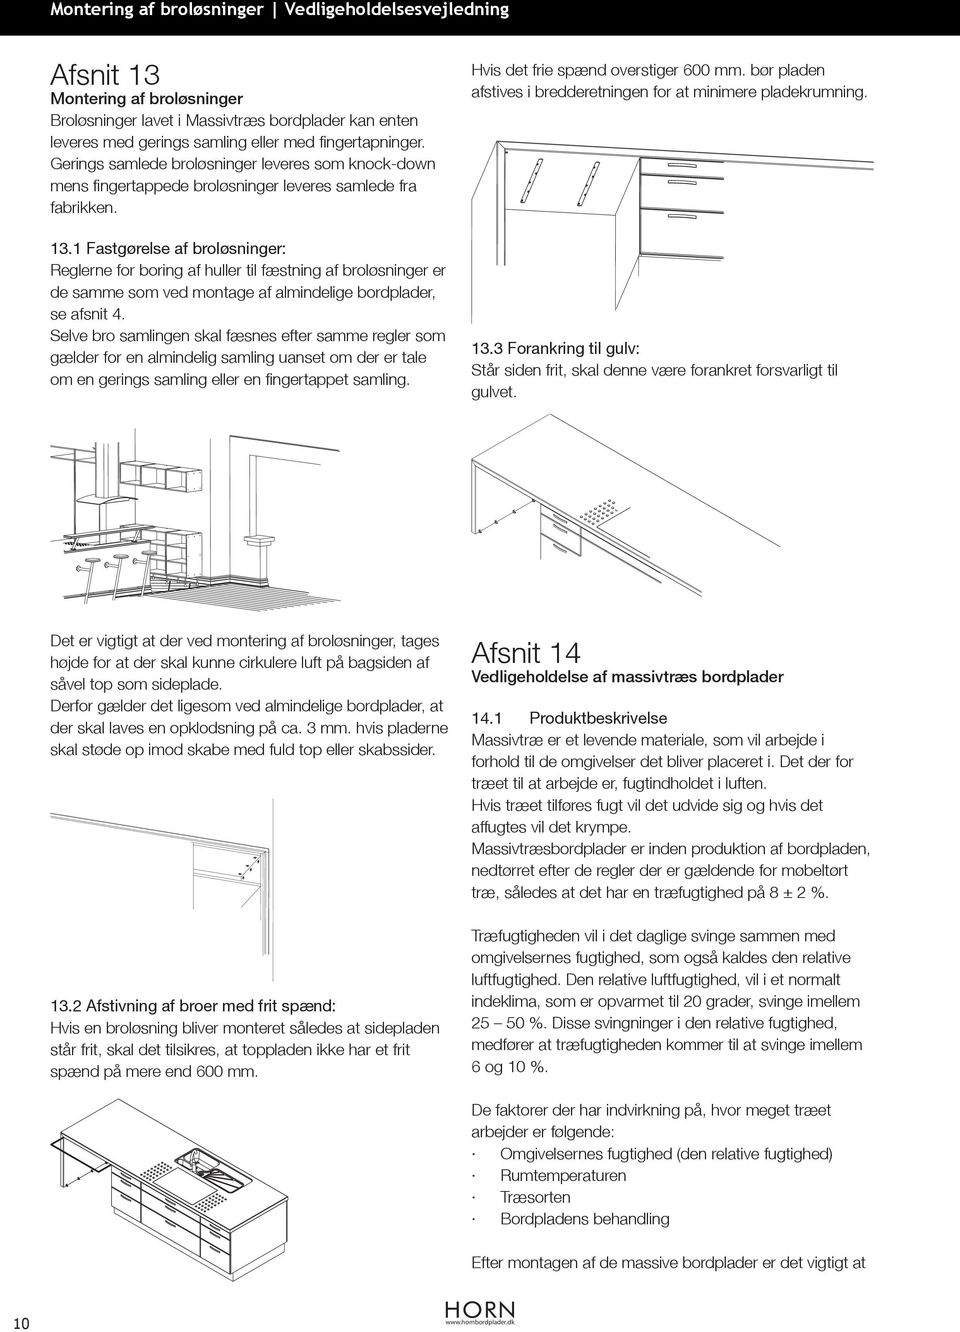 1 Fastgørelse af broløsninger: Reglerne for boring af huller til fæstning af broløsninger er de samme som ved montage af almindelige bordplader, se afsnit 4.